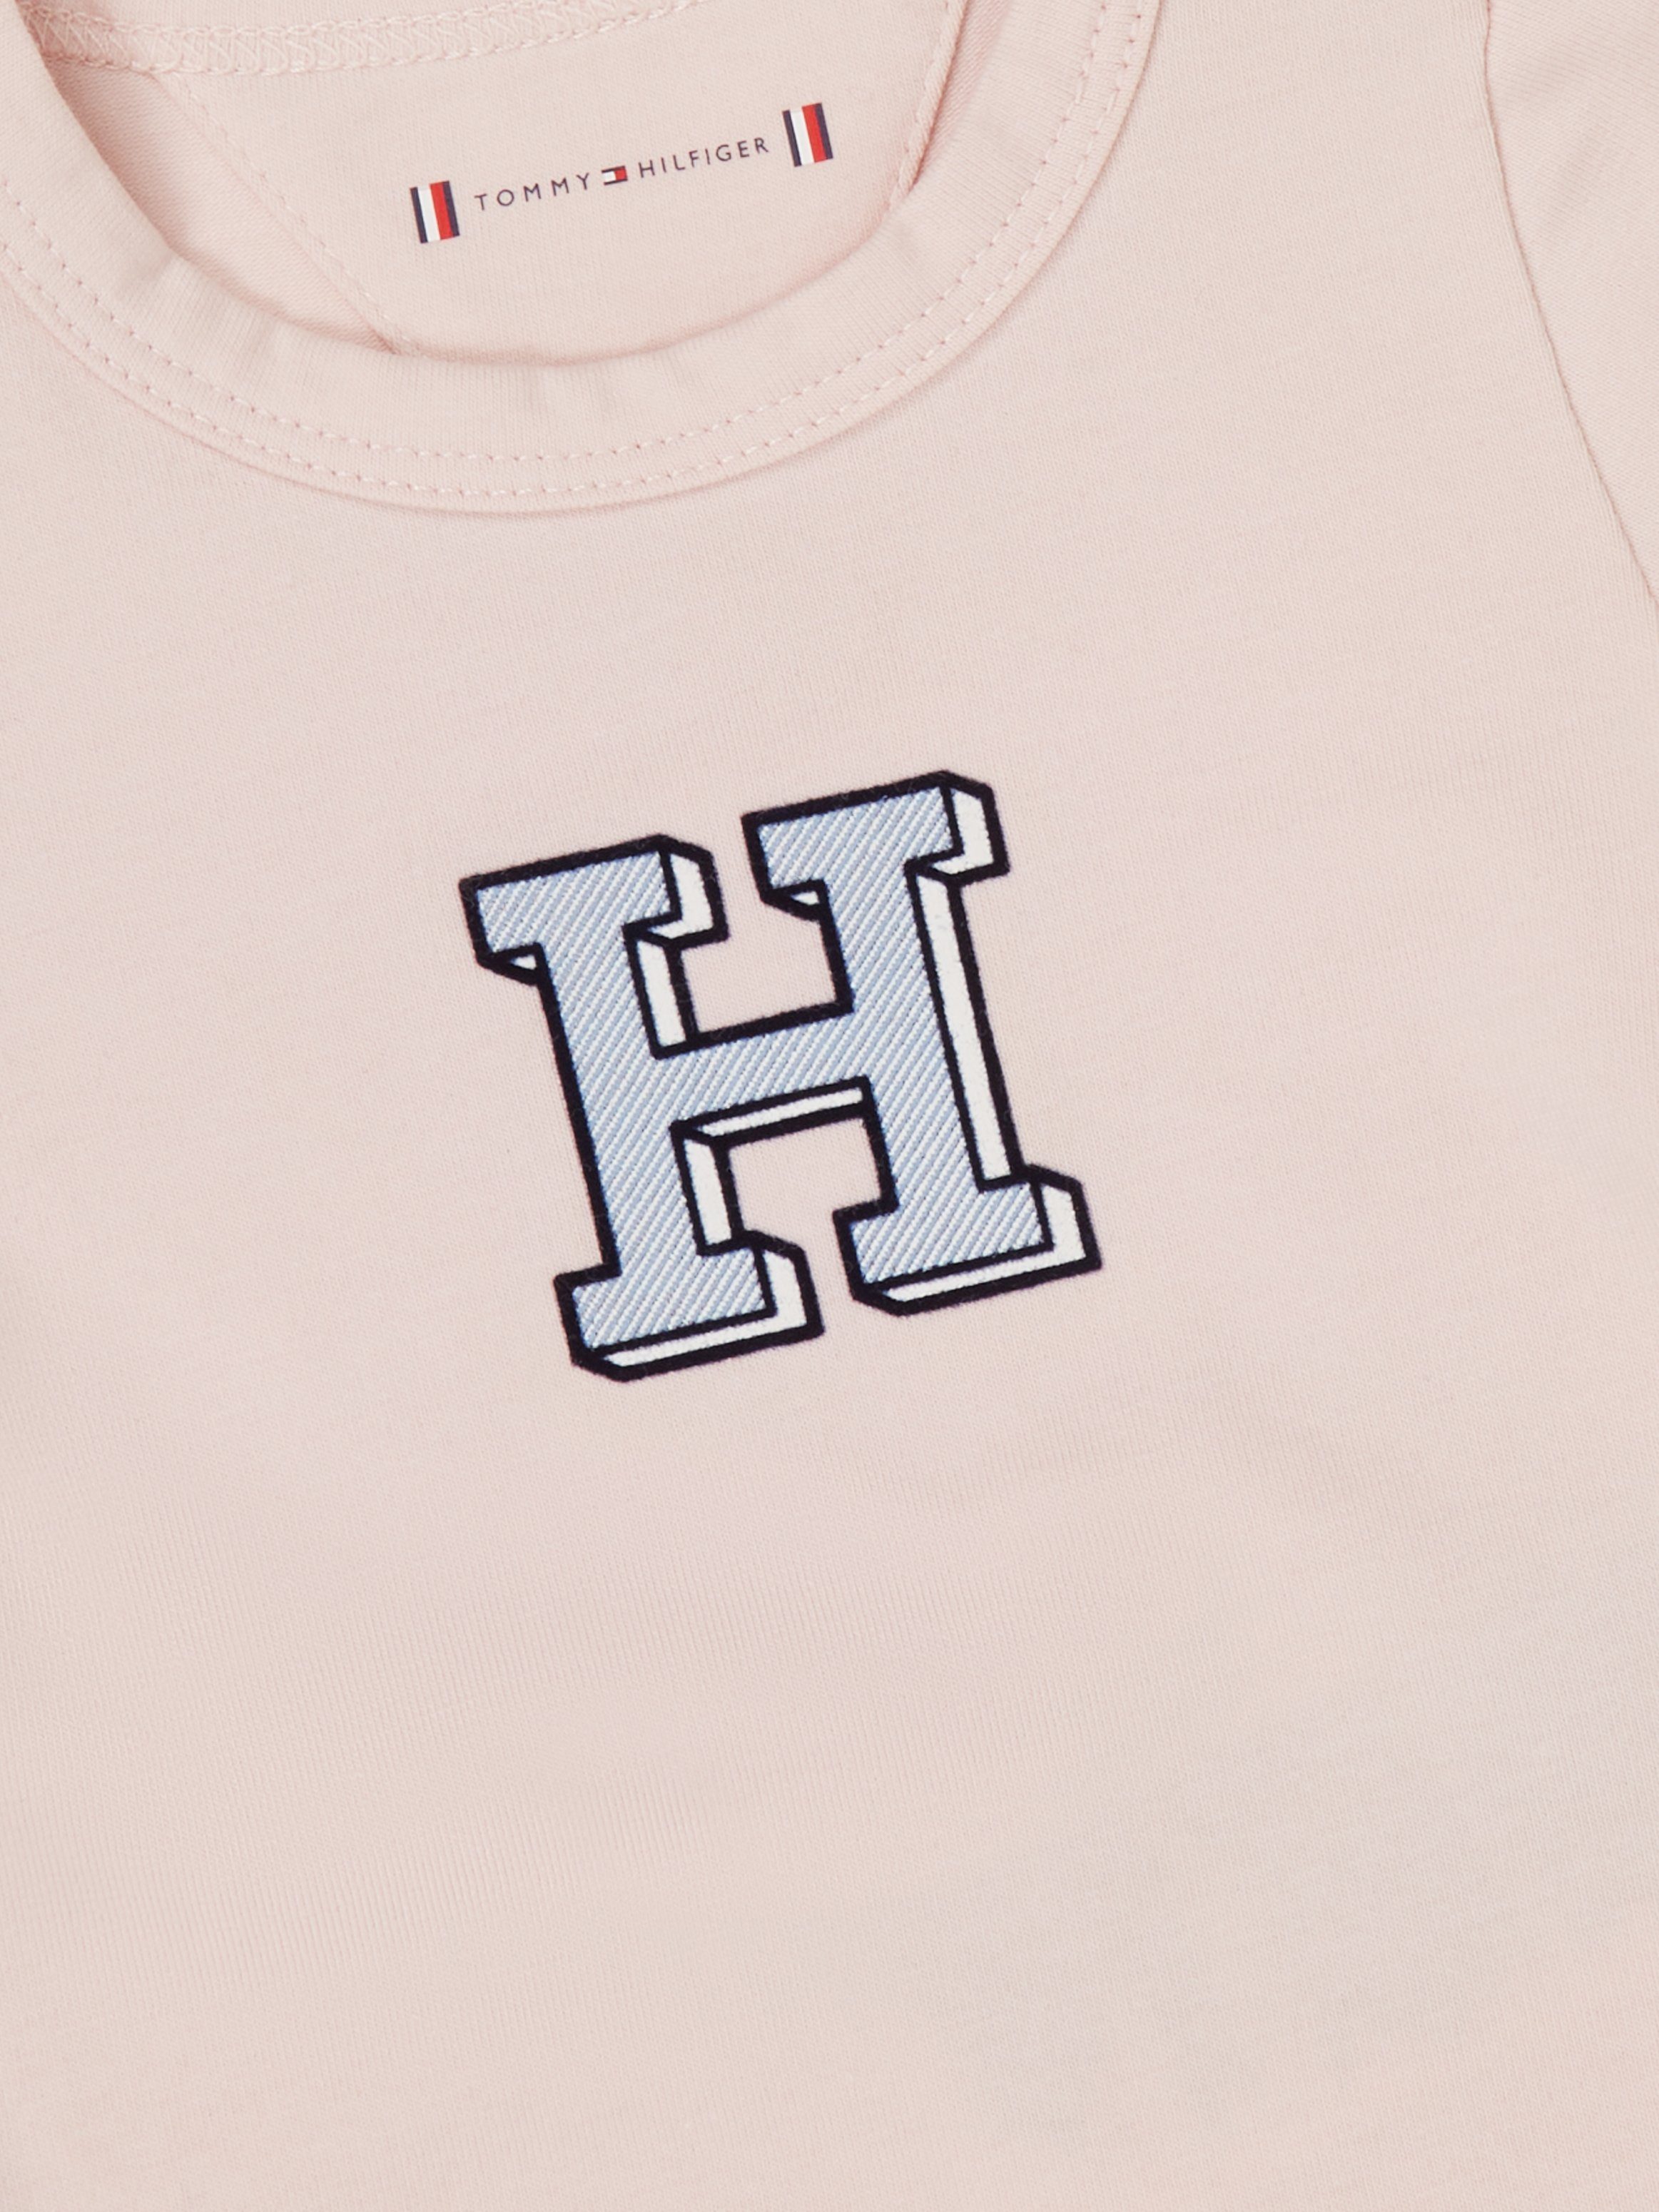 3er) Tommy 3 Logo-Stickerei Neugeborenen-Geschenkset Pink PACK Whimsy BABY Hilfiger (Set, mit GIFTBOX